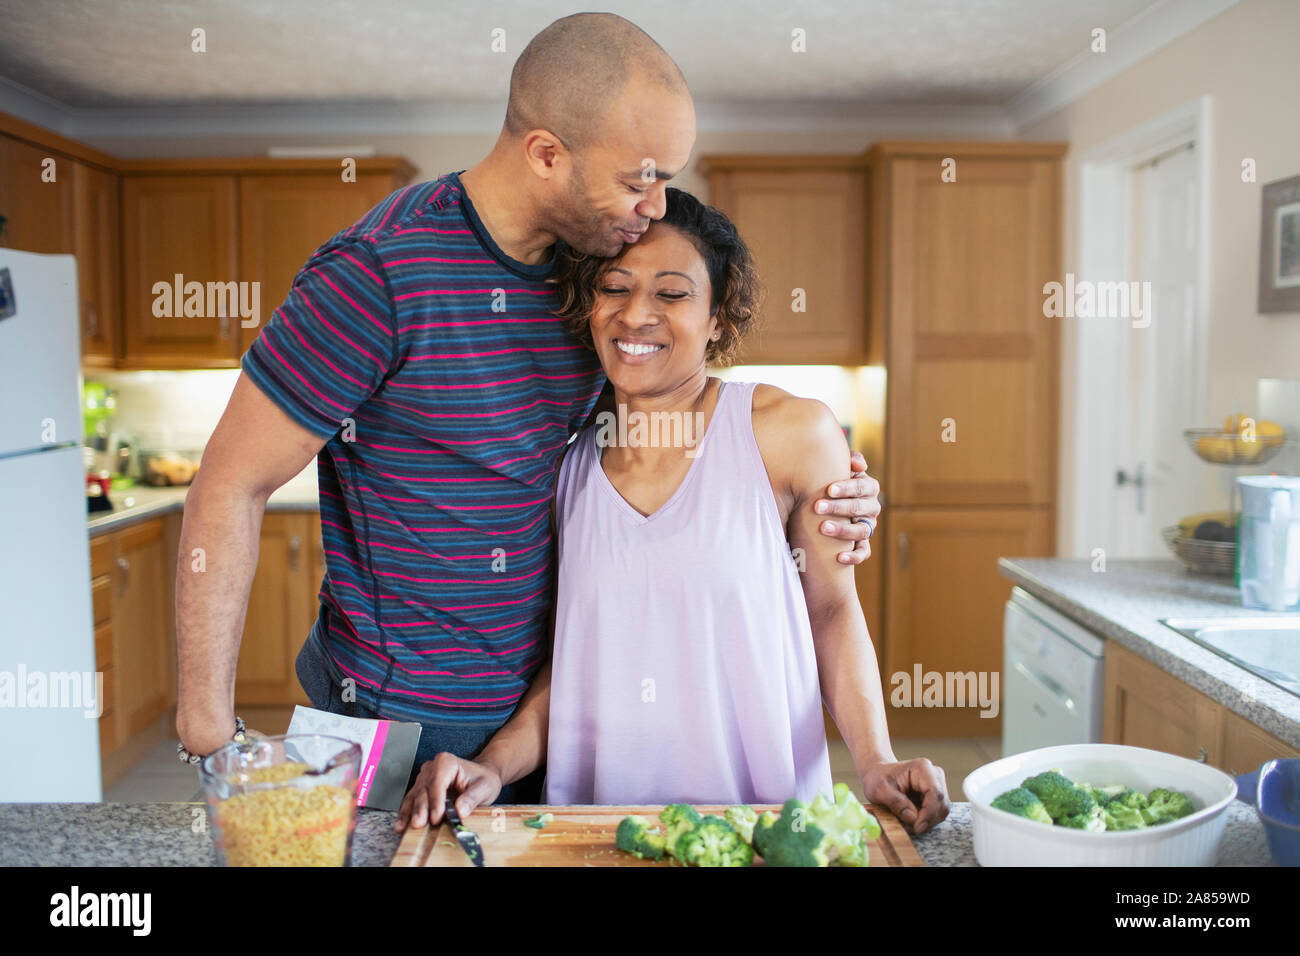 Mari affectueux hugging épouse la cuisson dans la cuisine Banque D'Images